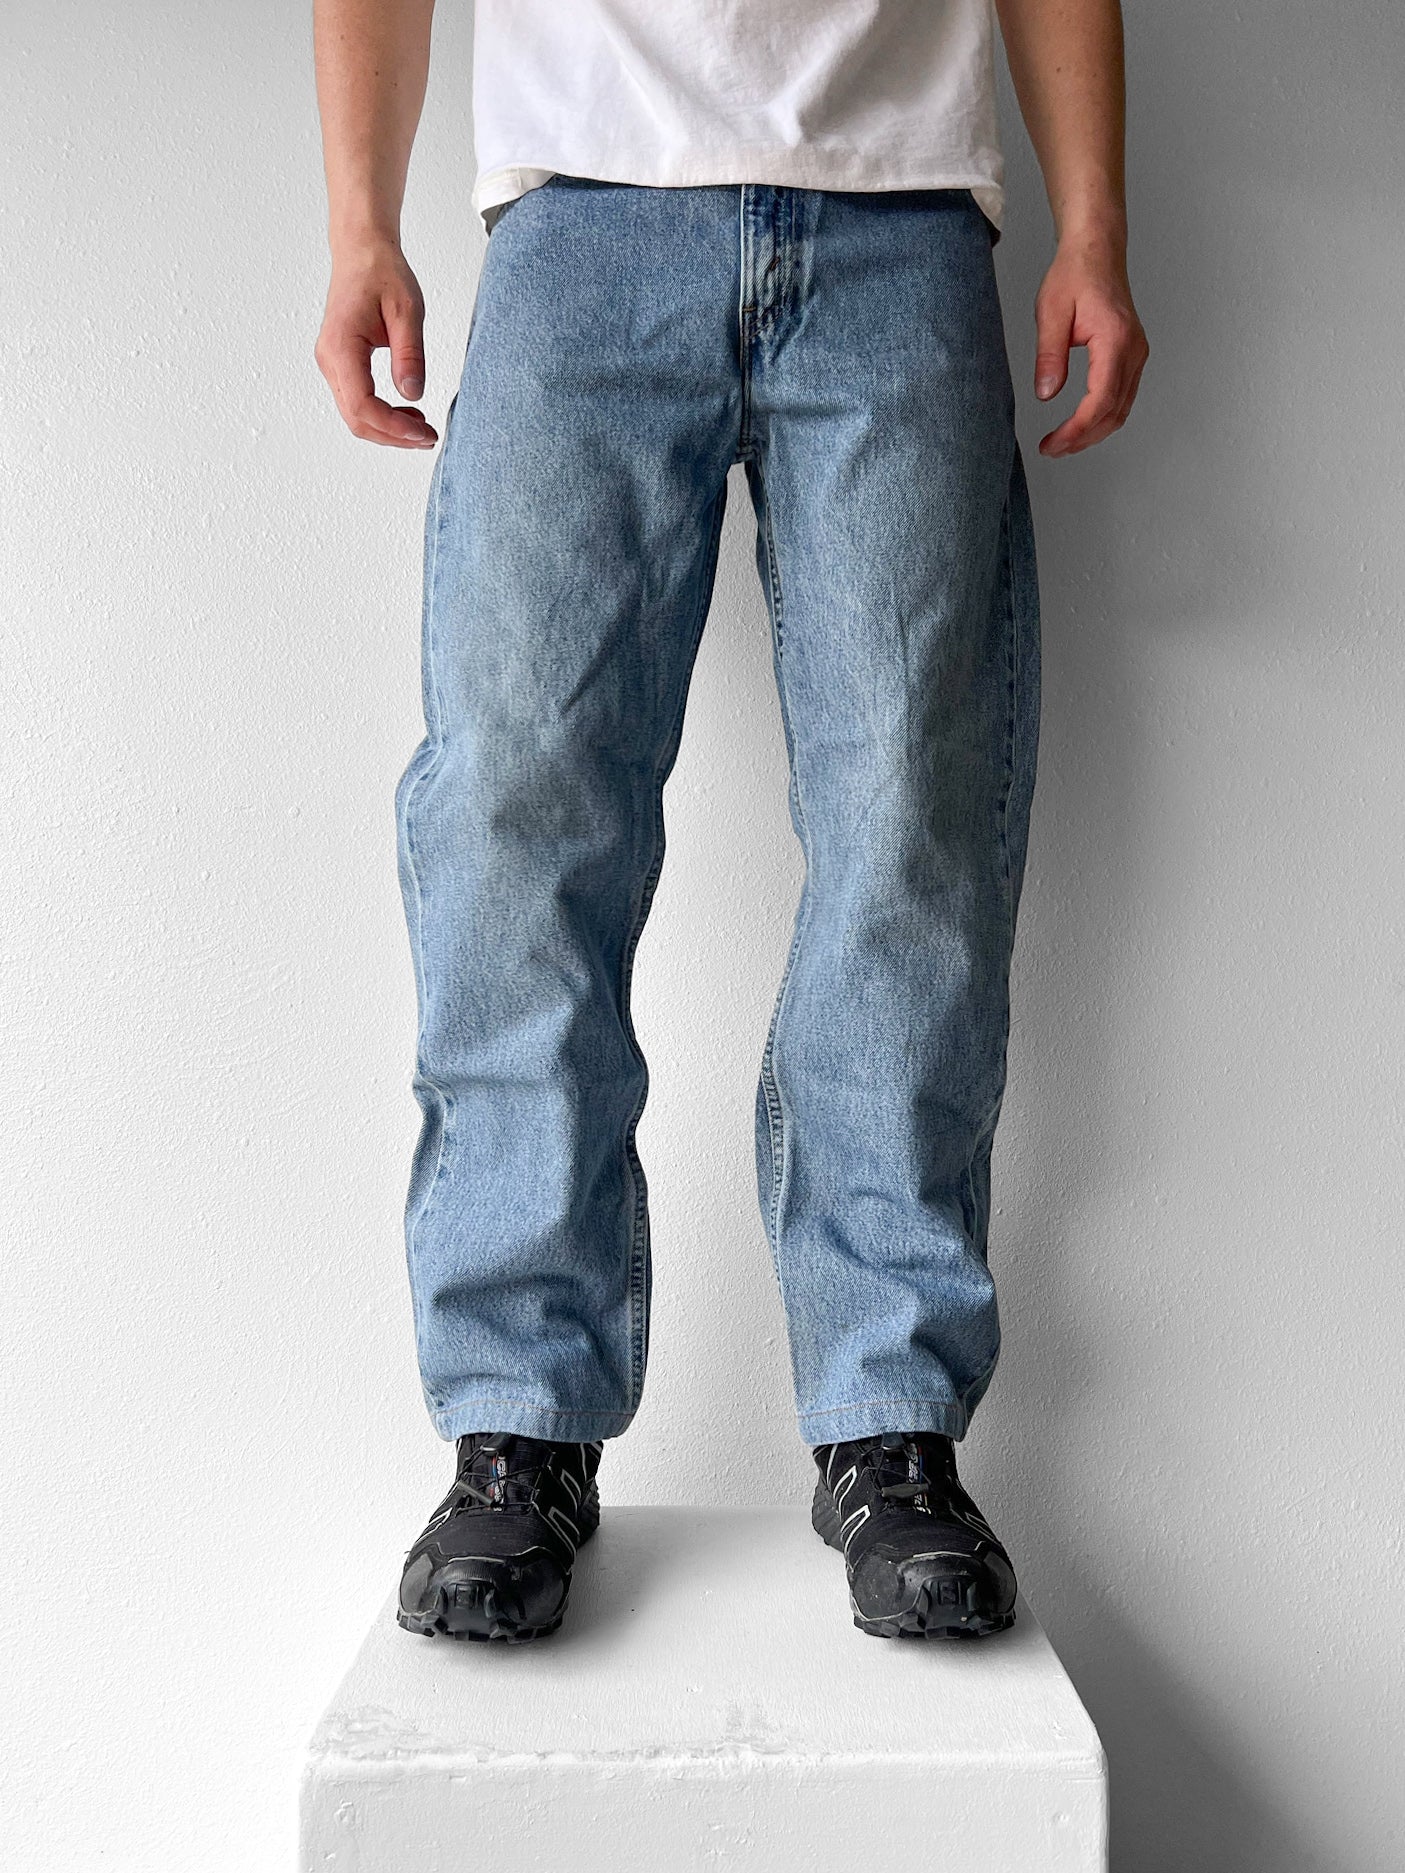 Levi’s 505 Jeans - 34 x 34